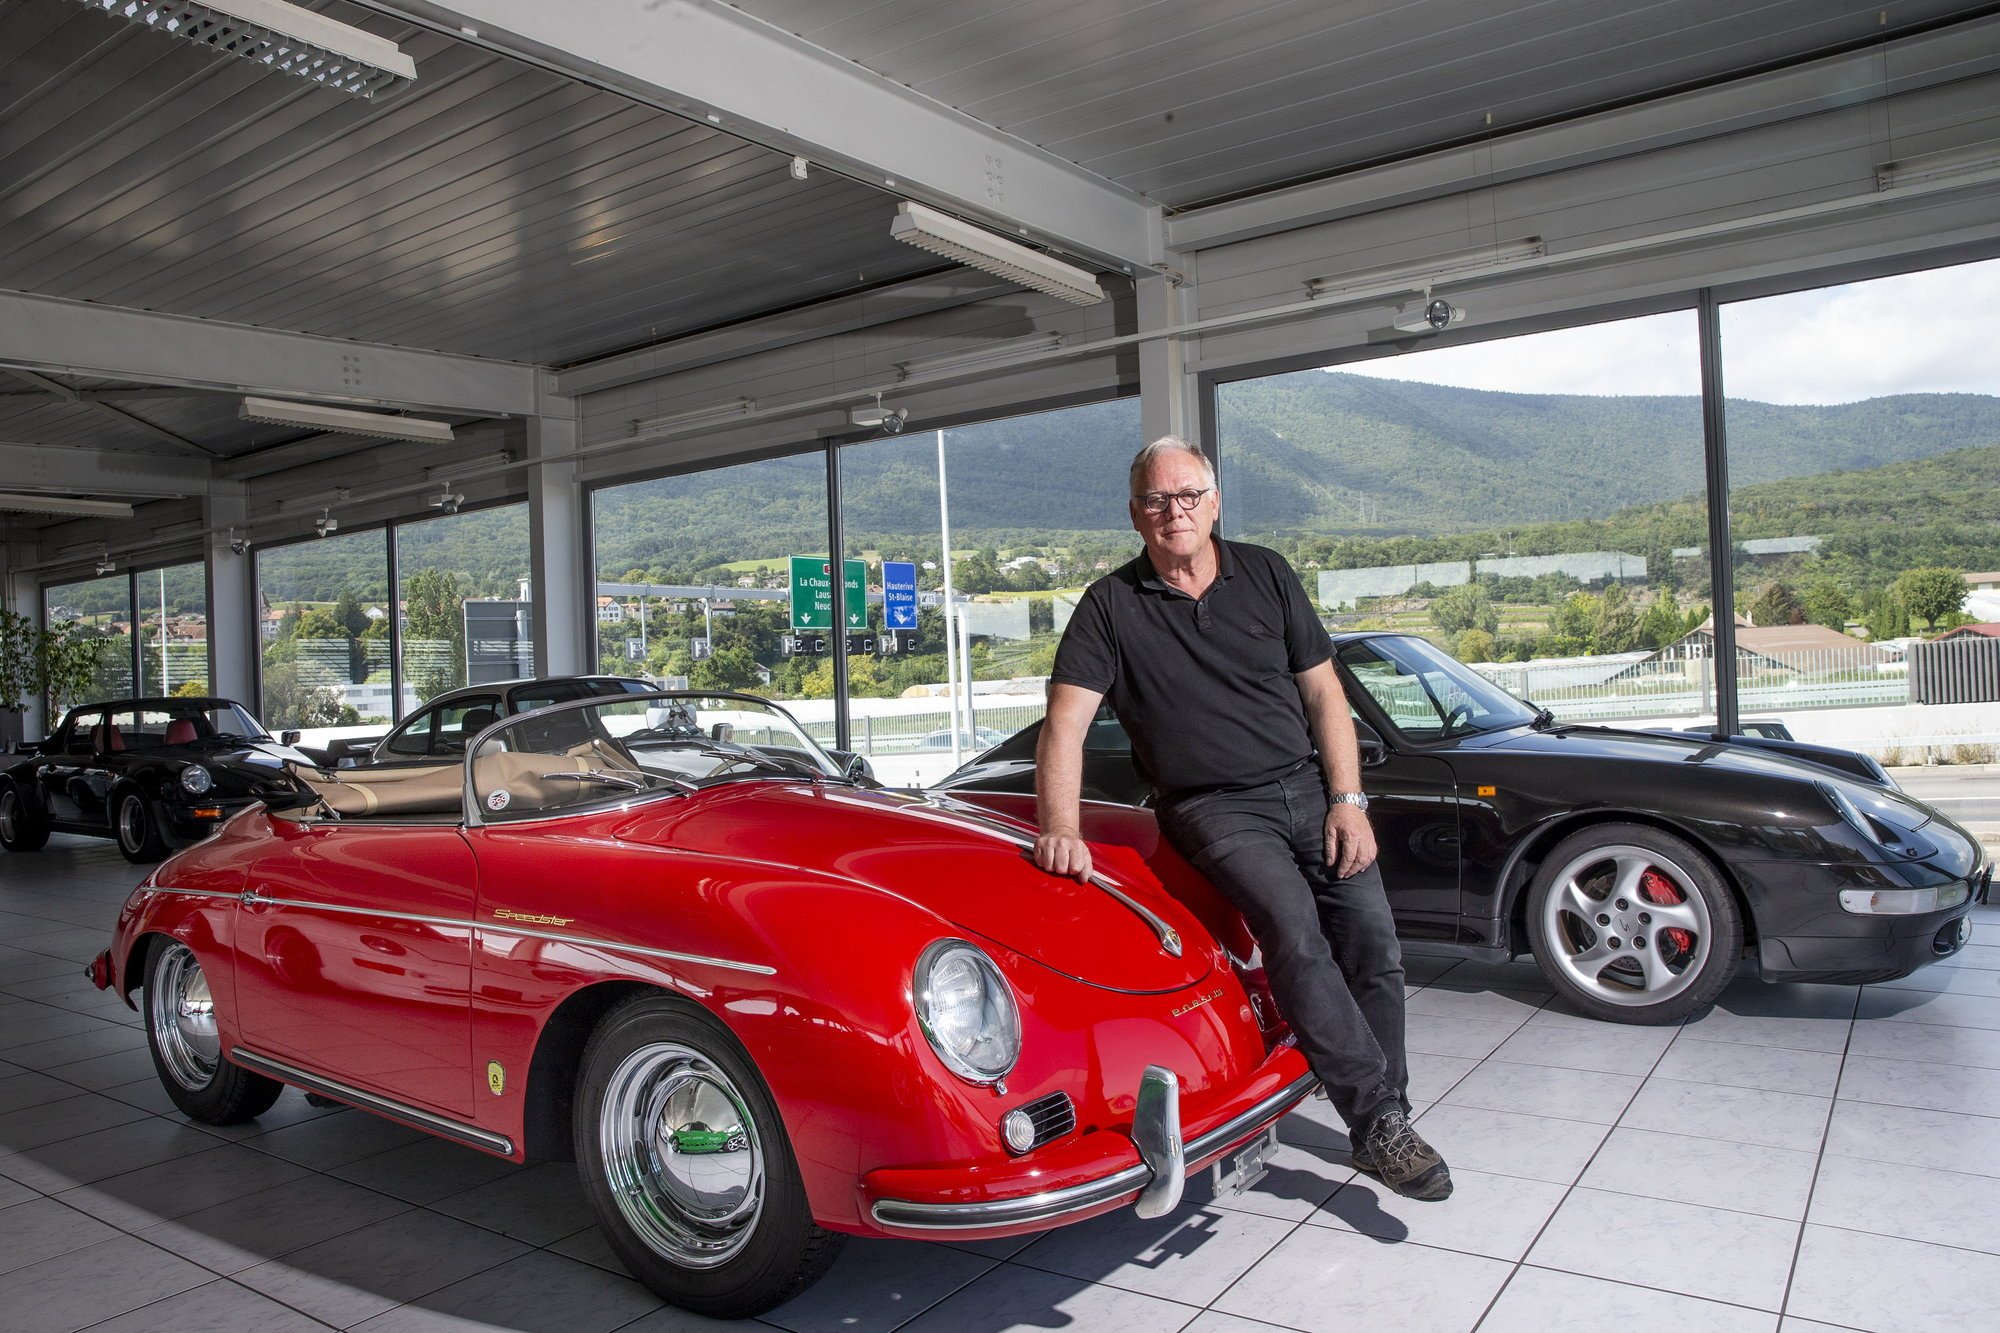 Si la vente est confirmée, Jean-Maurice Rey n’aura mis que quelques semaines avant de trouver un nouveau propriétaire pour cette Porsche de 1956 ayant probablement été conduite par Steve Jobs.